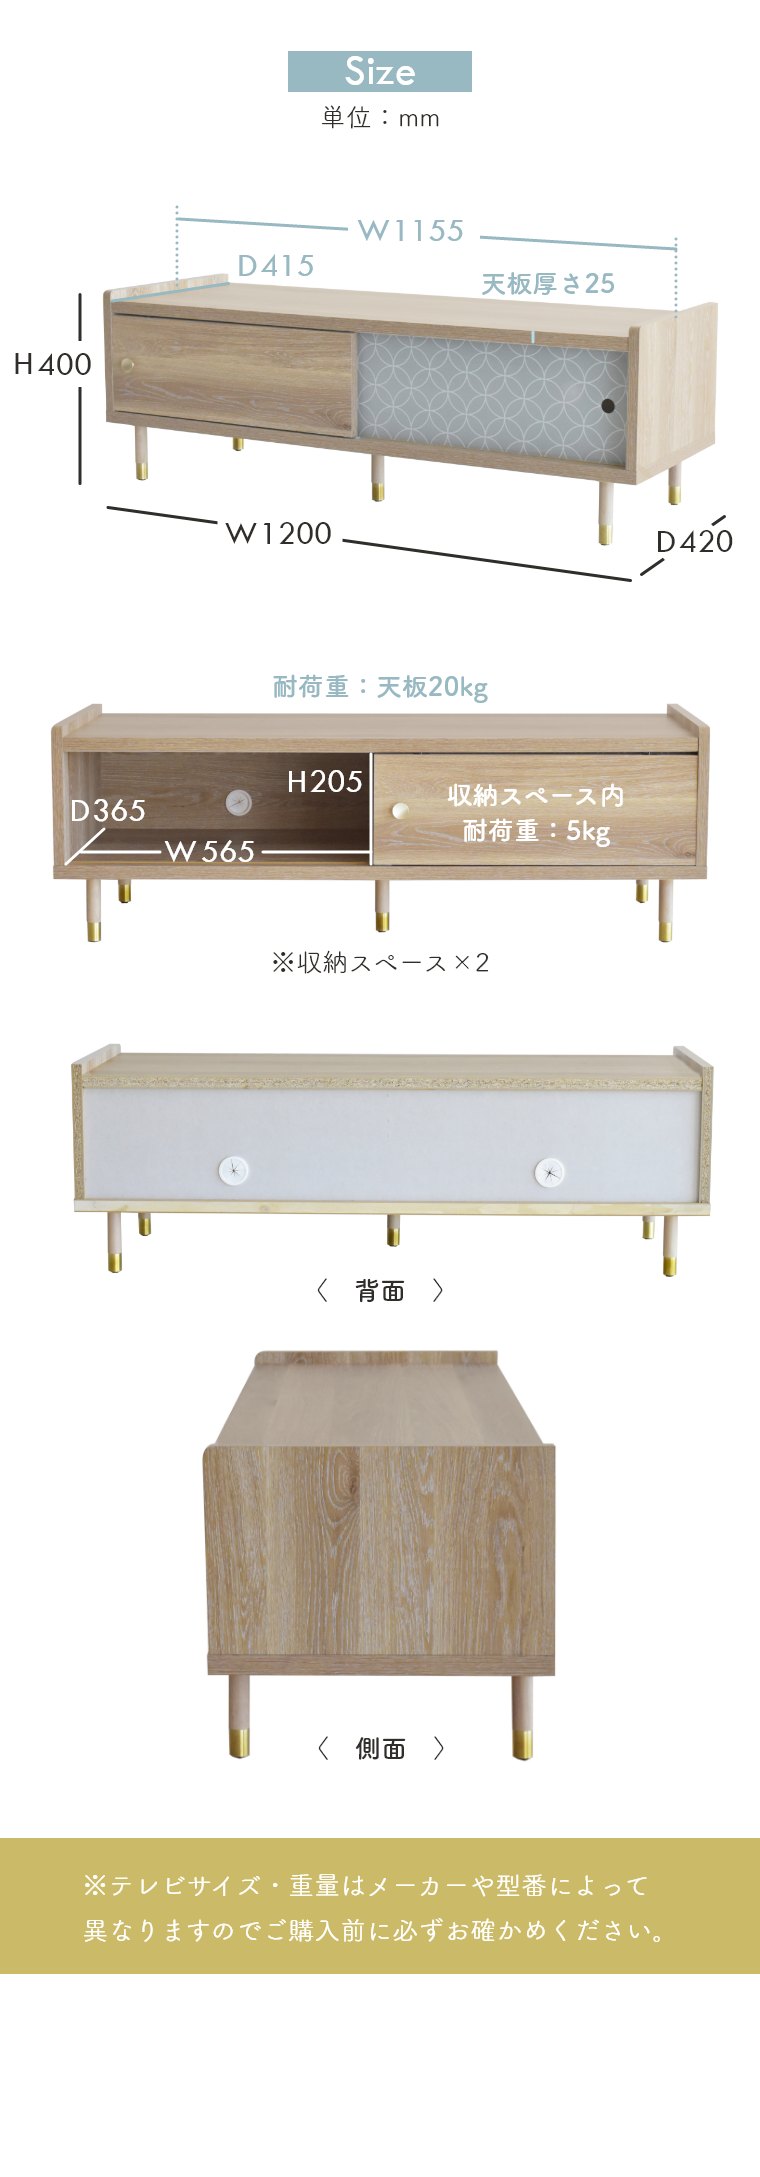 ヴァロ テレビボード ガルト 日本製 国産 木製